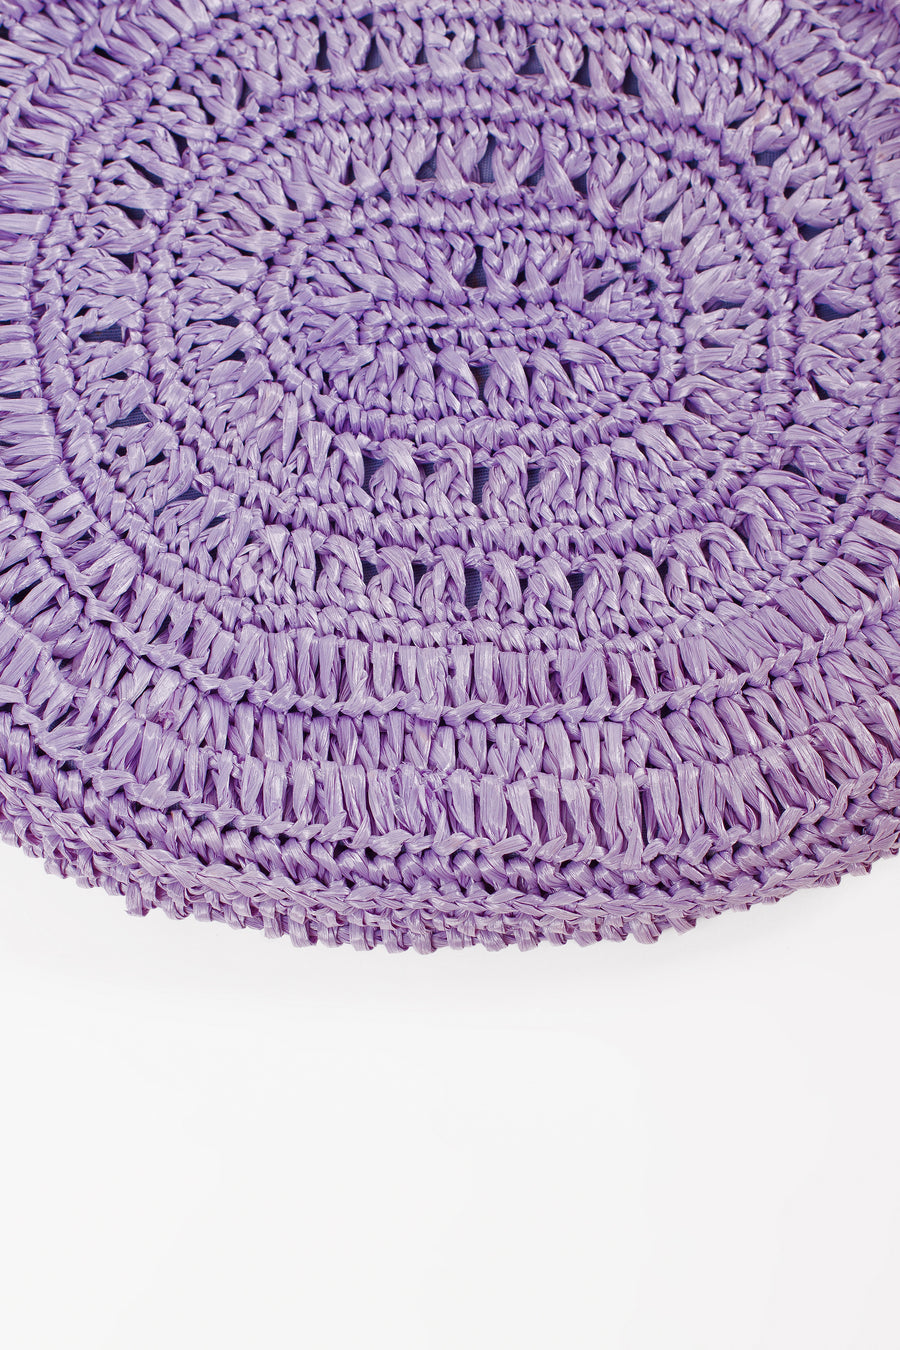 Vintage Pastel Purple Woven Purse